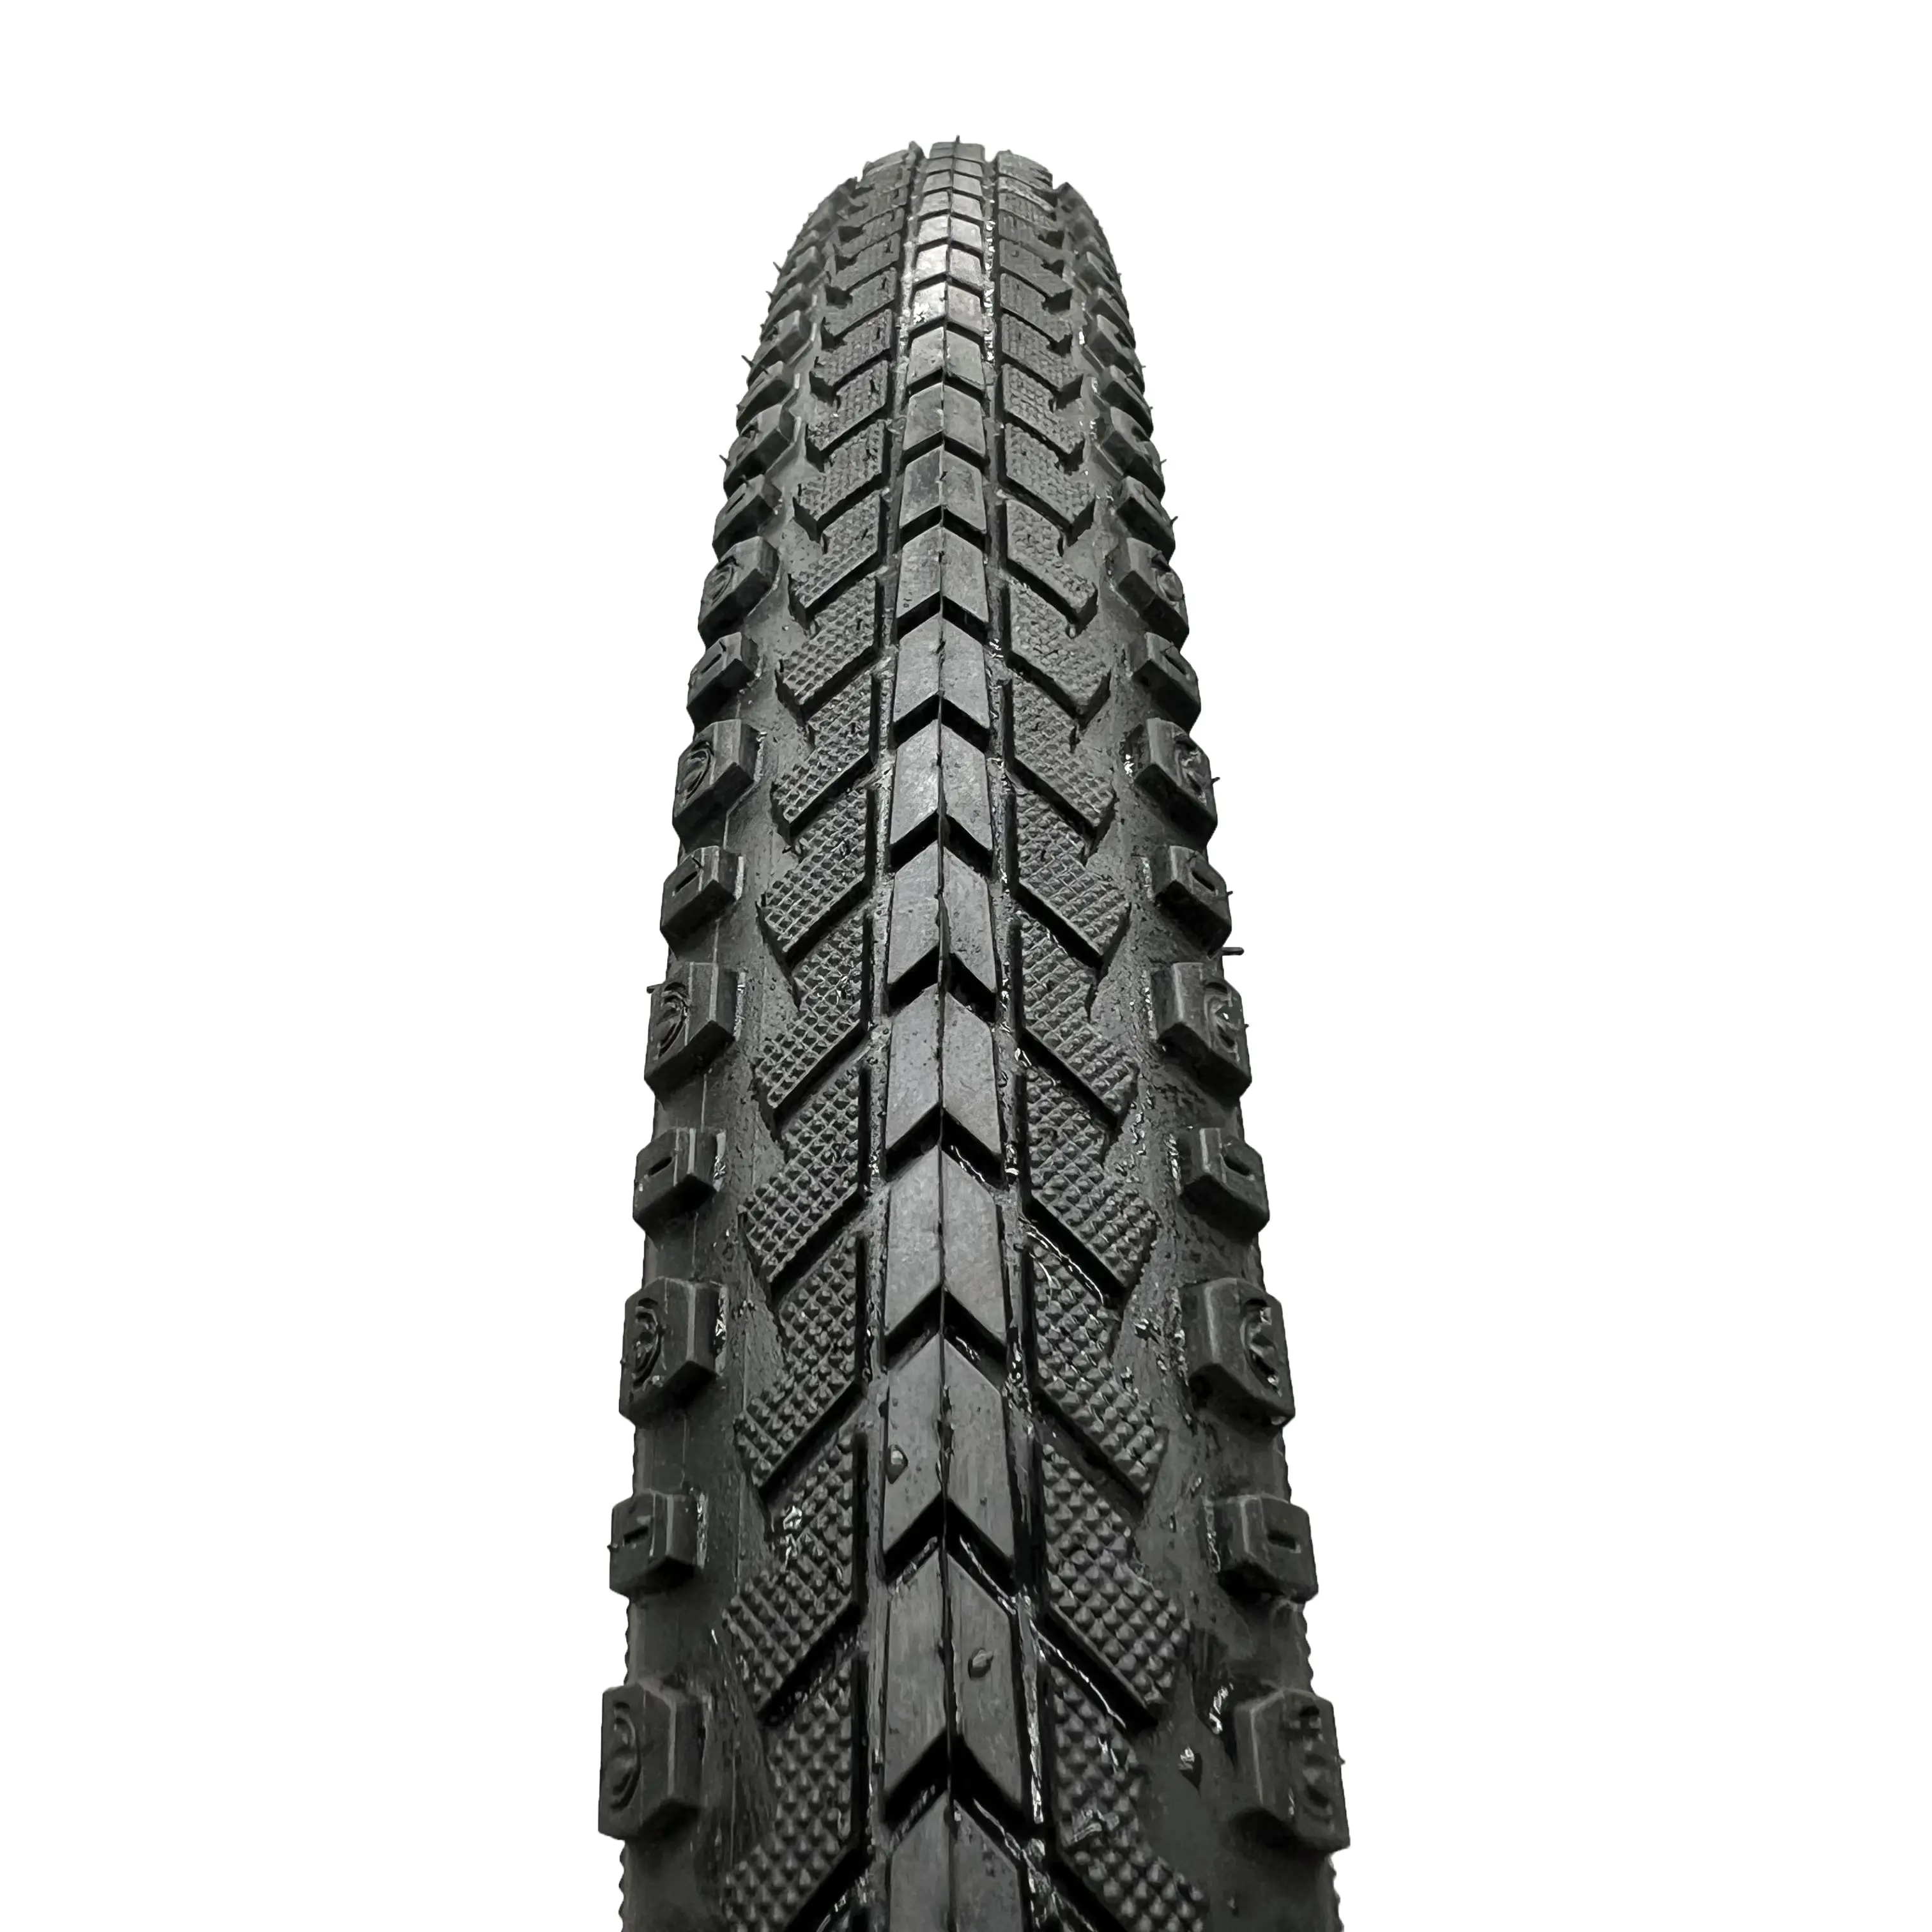 26x1,50 велосипедная шина 26 дюймов для горных велосипедов и дорожных велосипедов